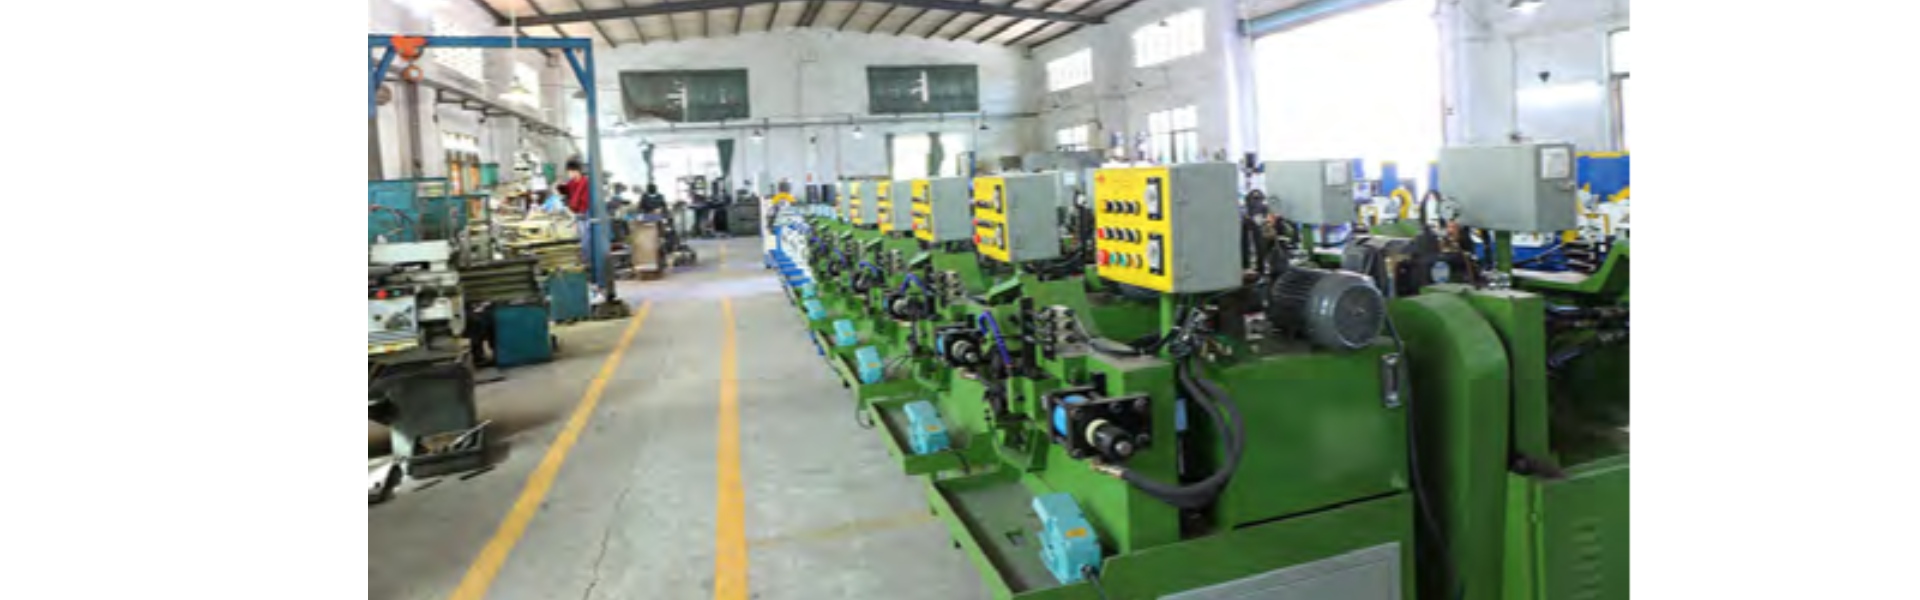 Gömbölydoboz, automata csővágó gép, teljes mértékben automata fogaskerék,Dongguan Hongbo Precision Machinery Manufacturing Co.,Ltd.